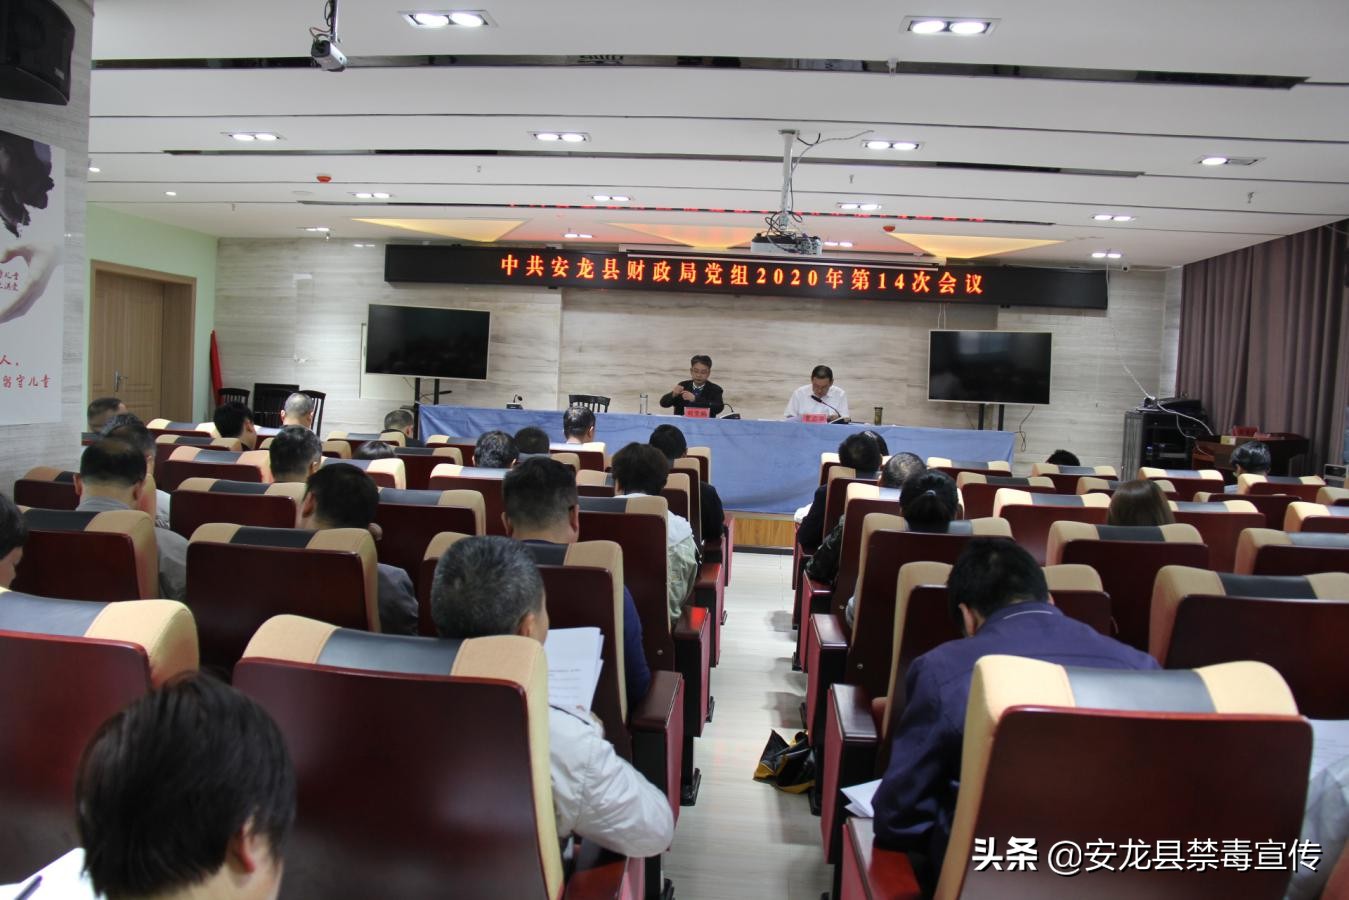 安龙县财政局召开党组会议安排部署禁毒工作